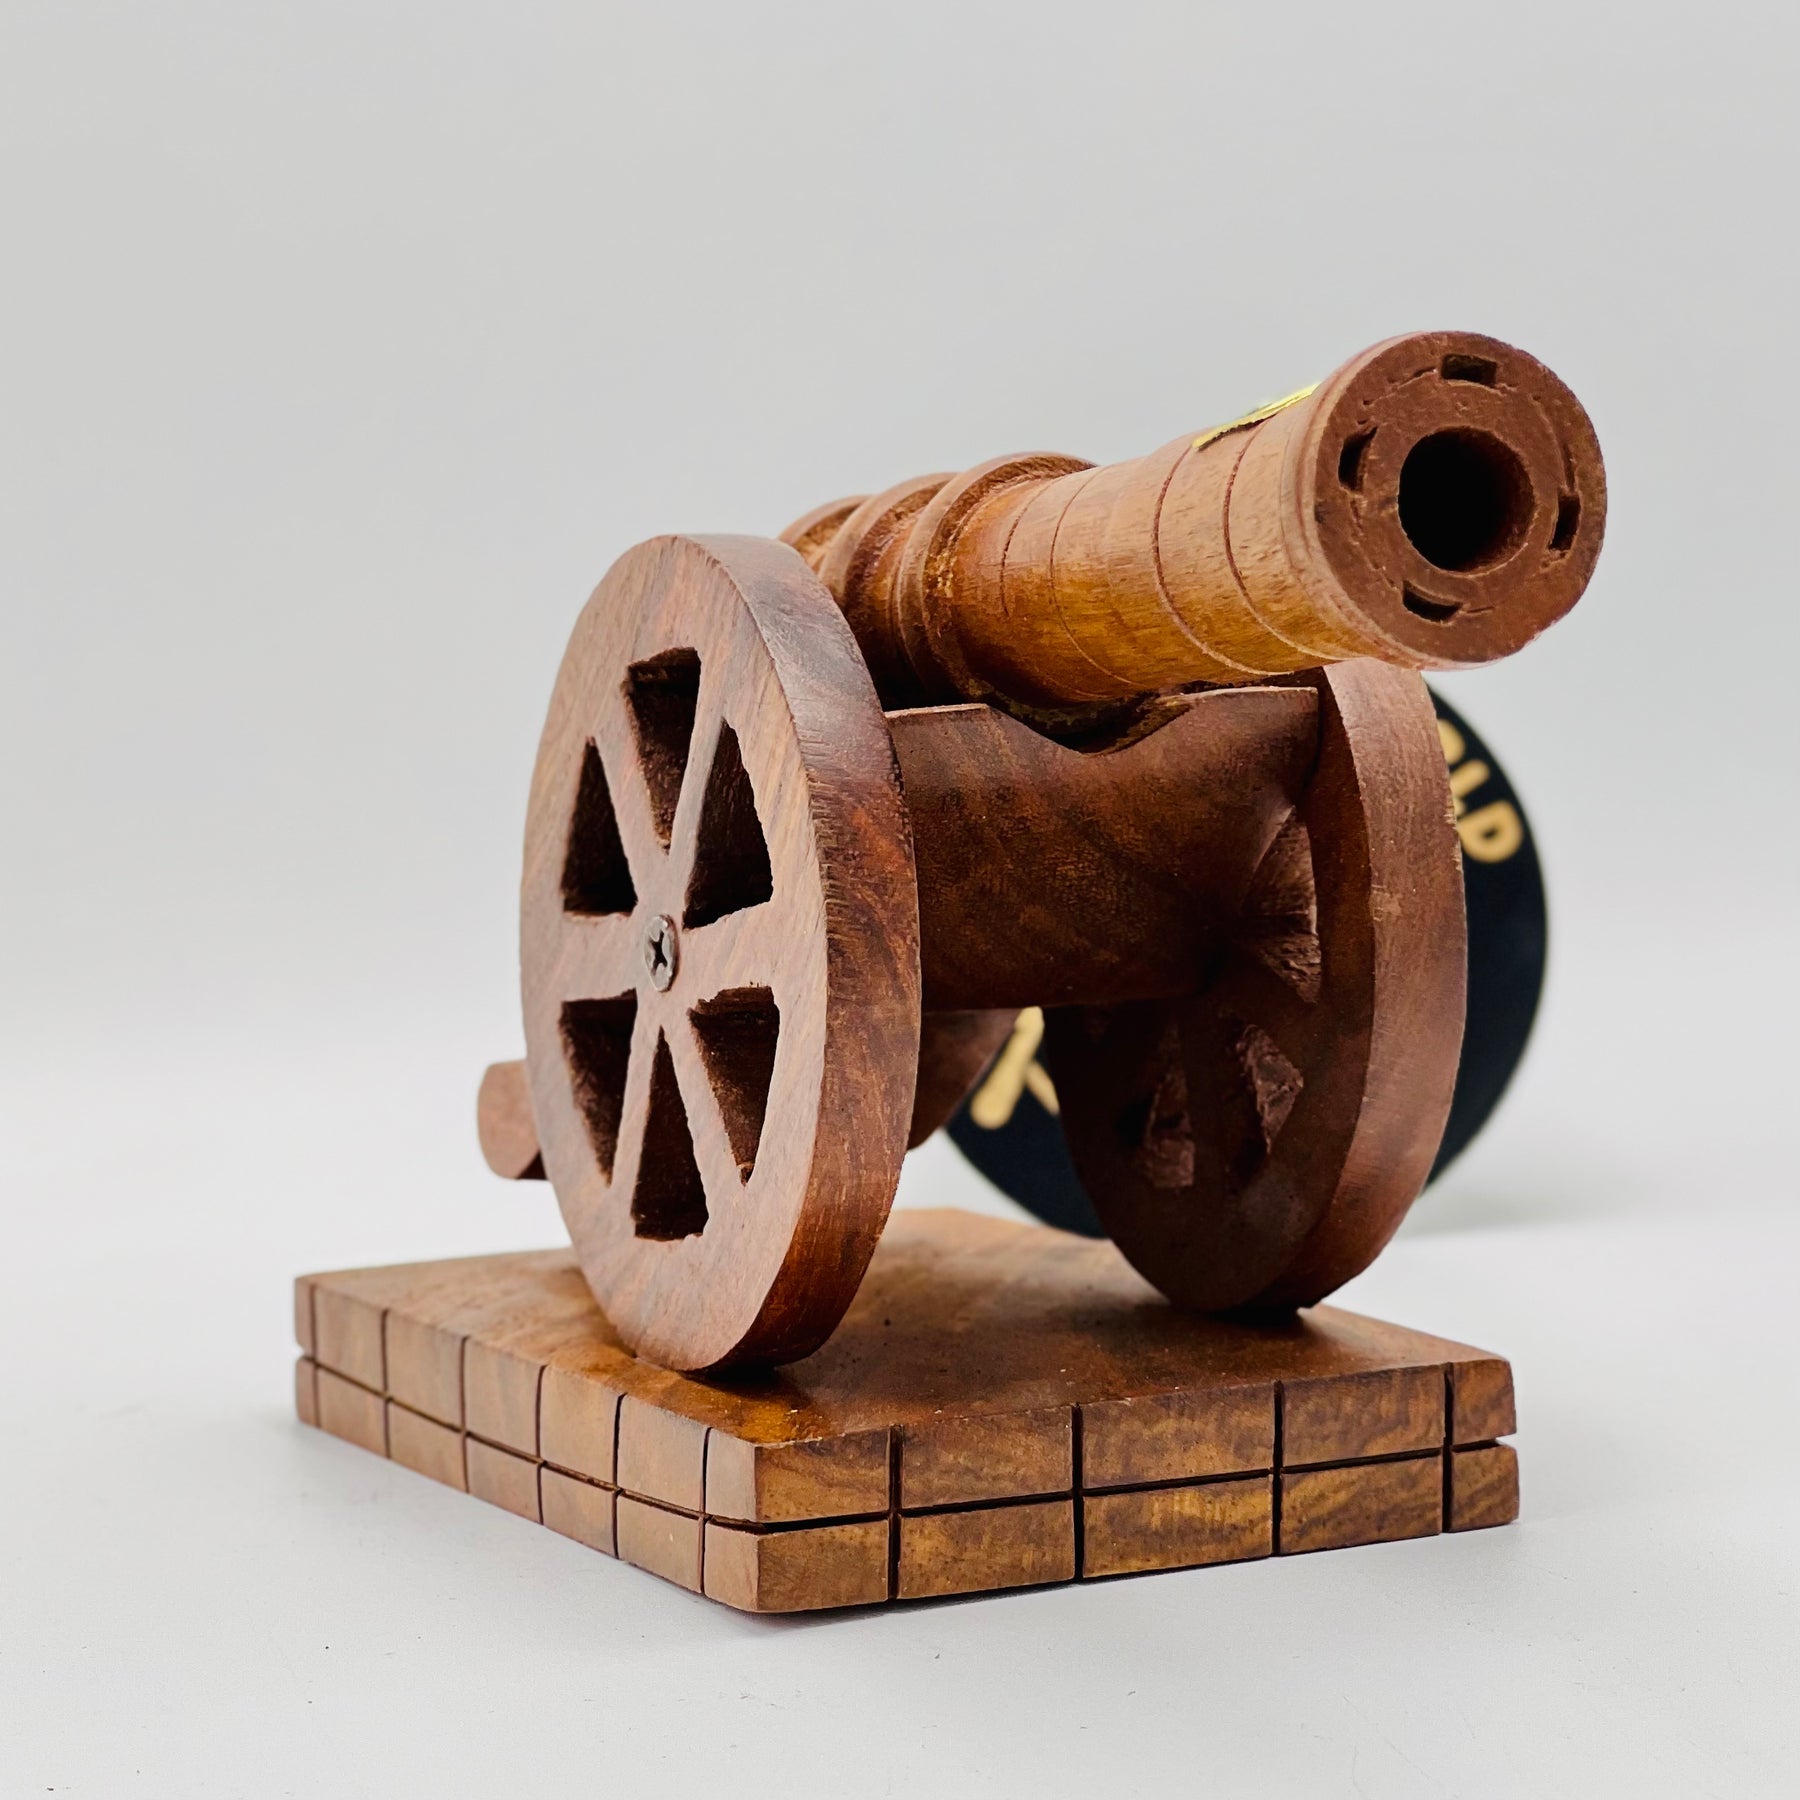 Wooden Handicraft Catapult